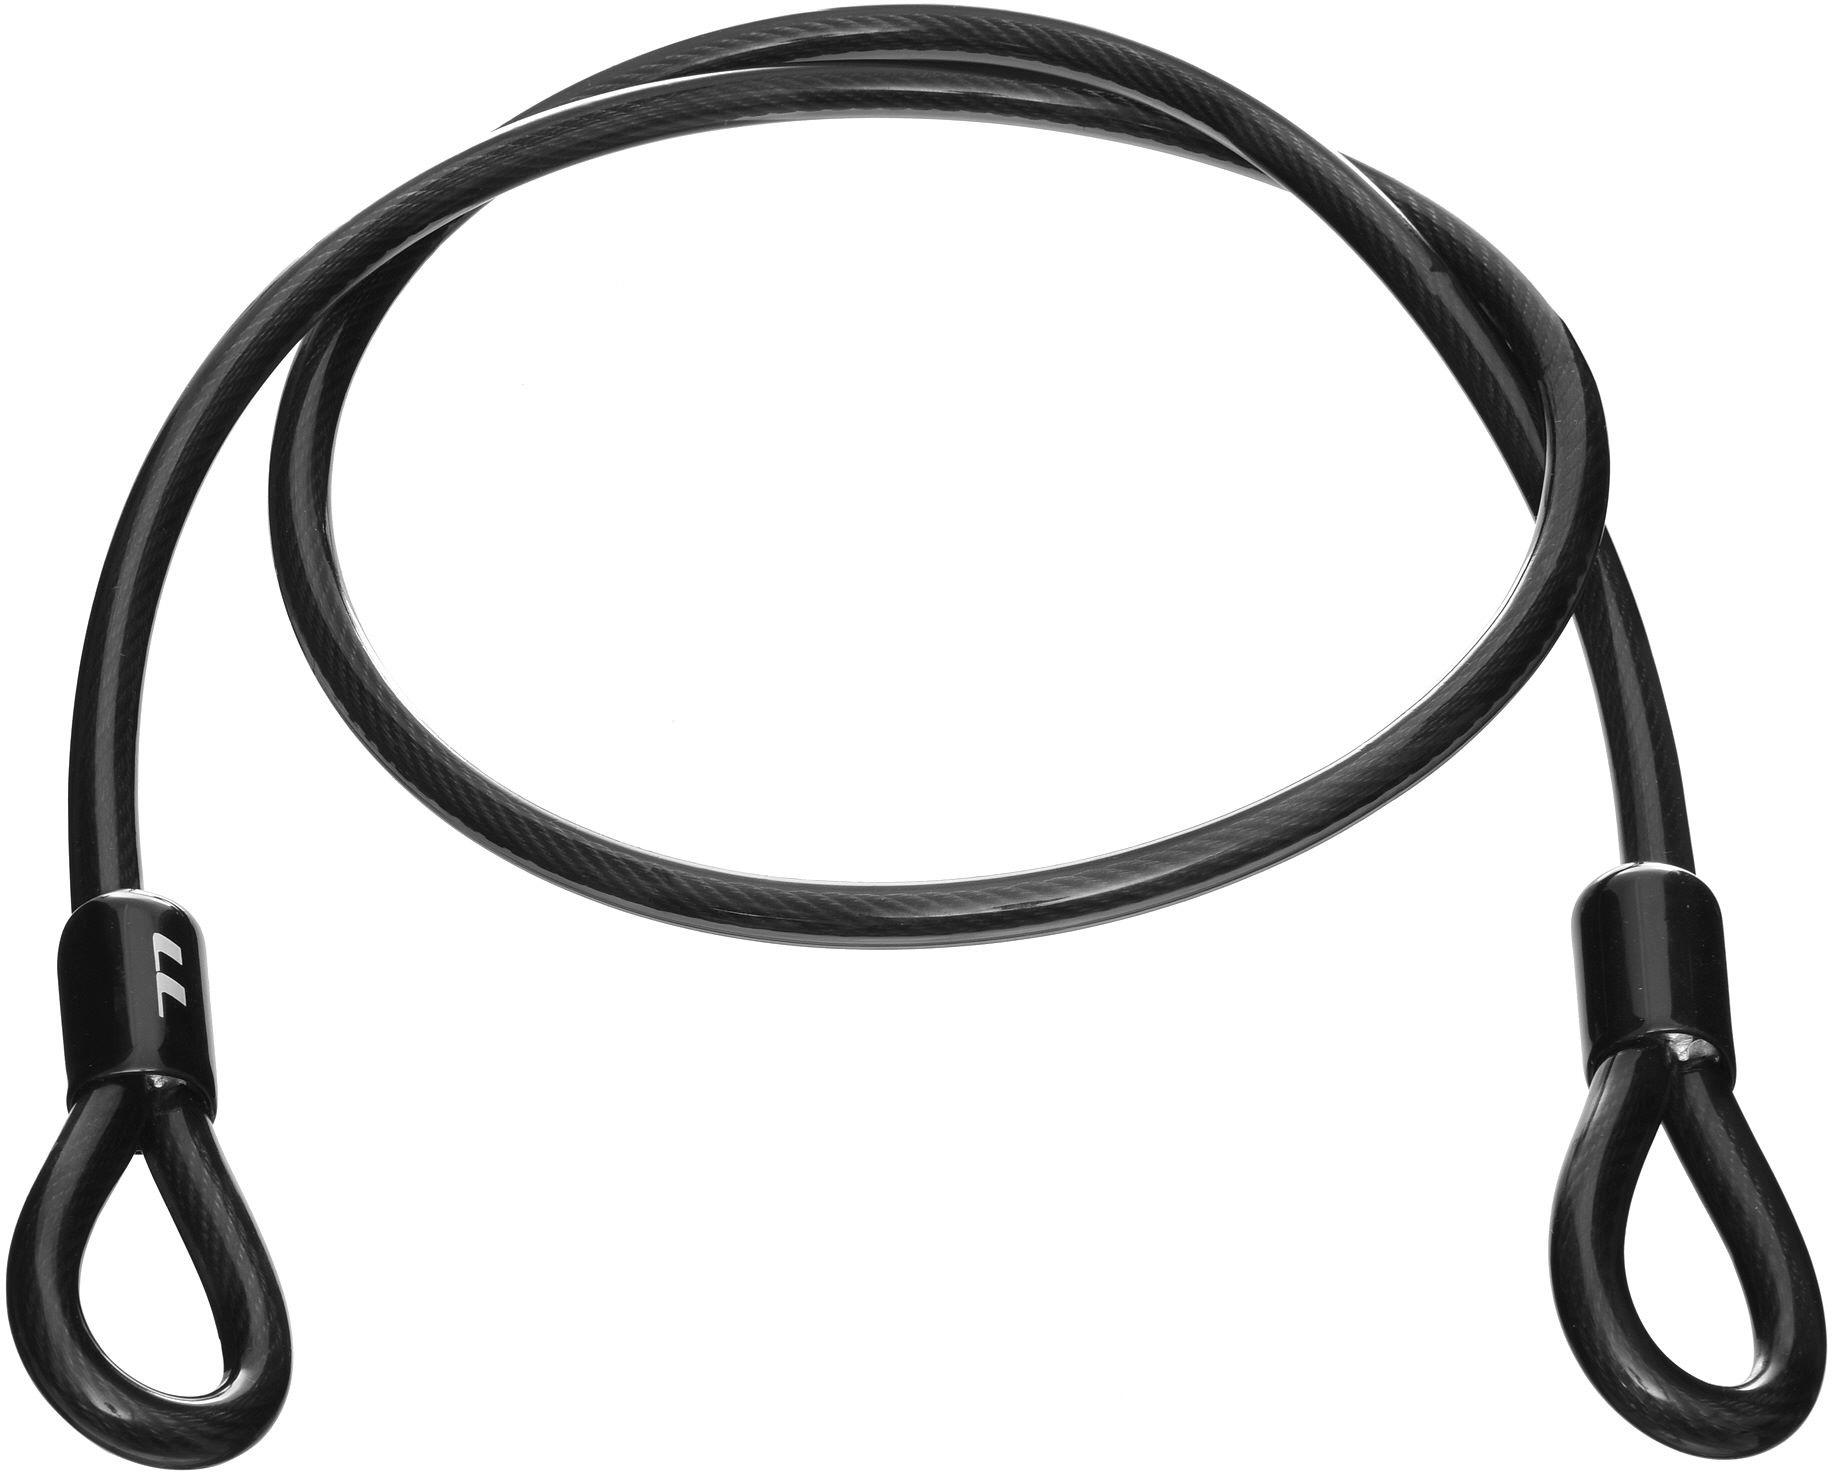 Lifeline Bike Lock Extension Loop Cable - Black